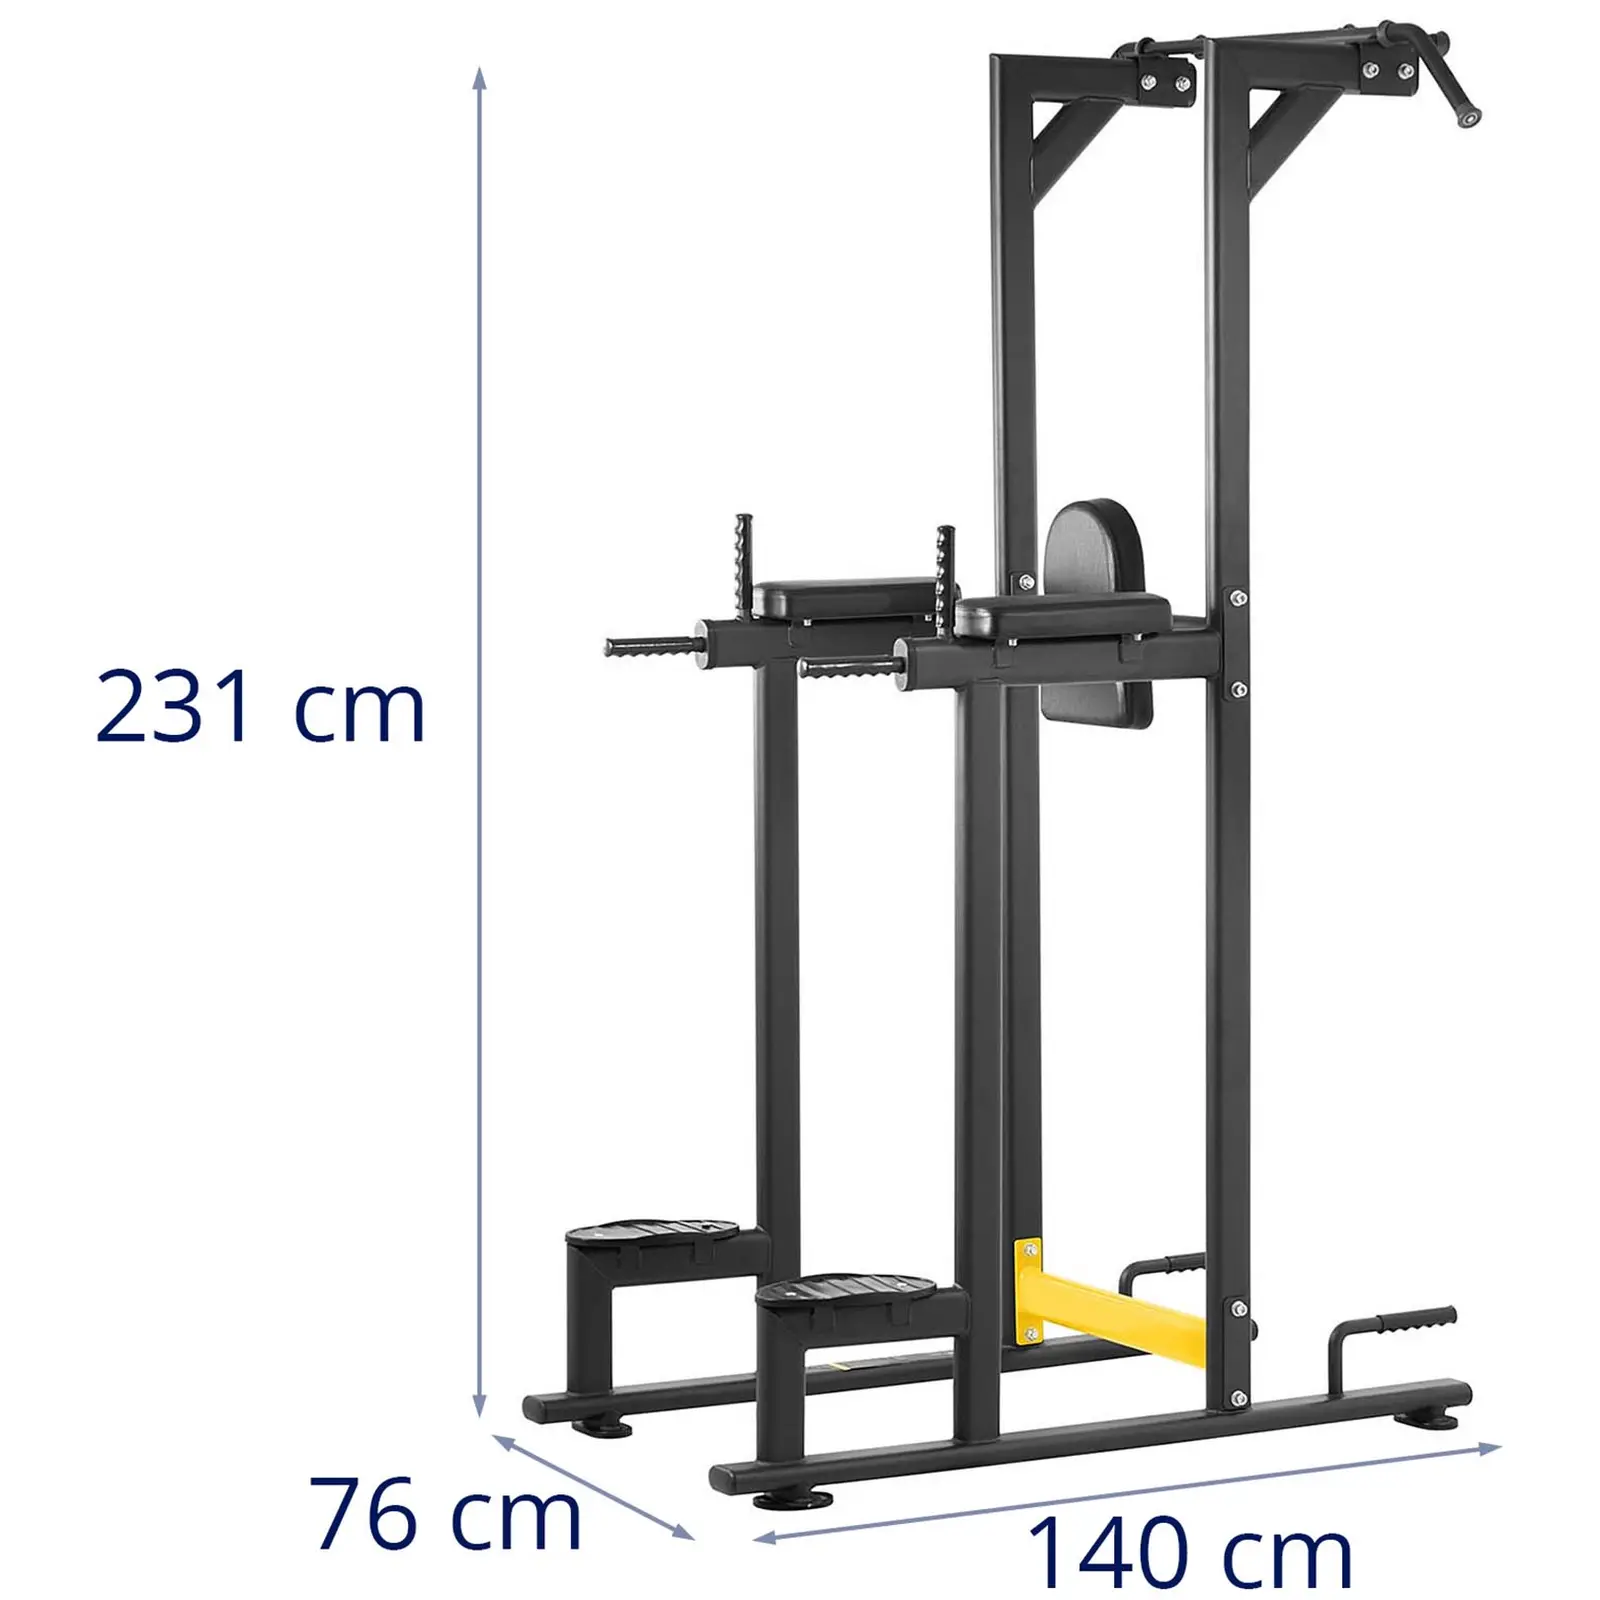 Træningsstativ til knæøvelser - 135 kg